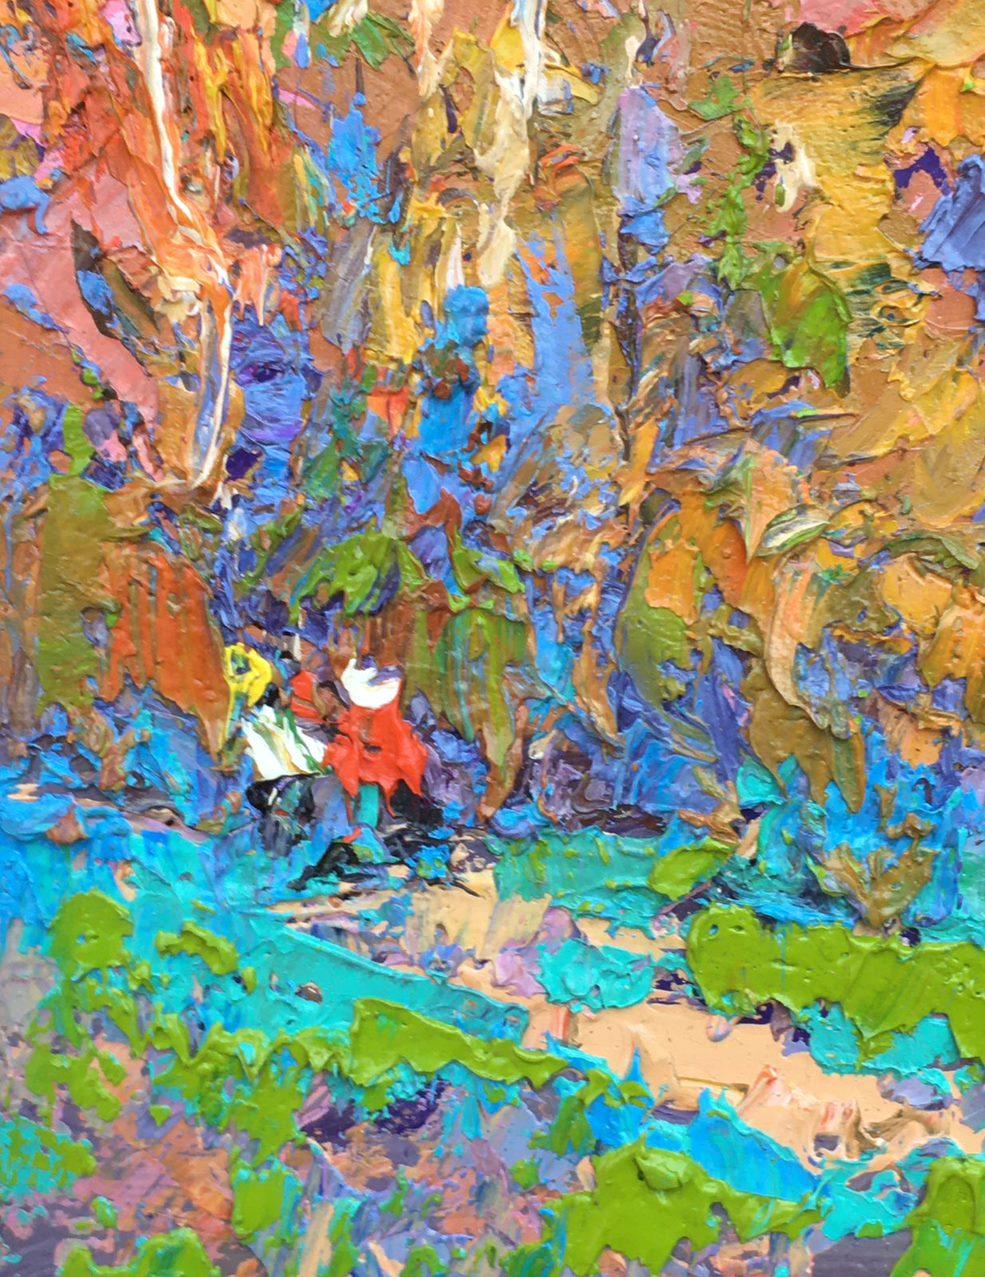 Artistics : Alex Kalenyuk 
Oeuvre : Peinture à l'huile originale, œuvre d'art faite à la main, unique en son genre. 
Médium : Huile sur toile 
Année : 2020
Style : Impressionnisme
Titre : Silence
Taille : 10